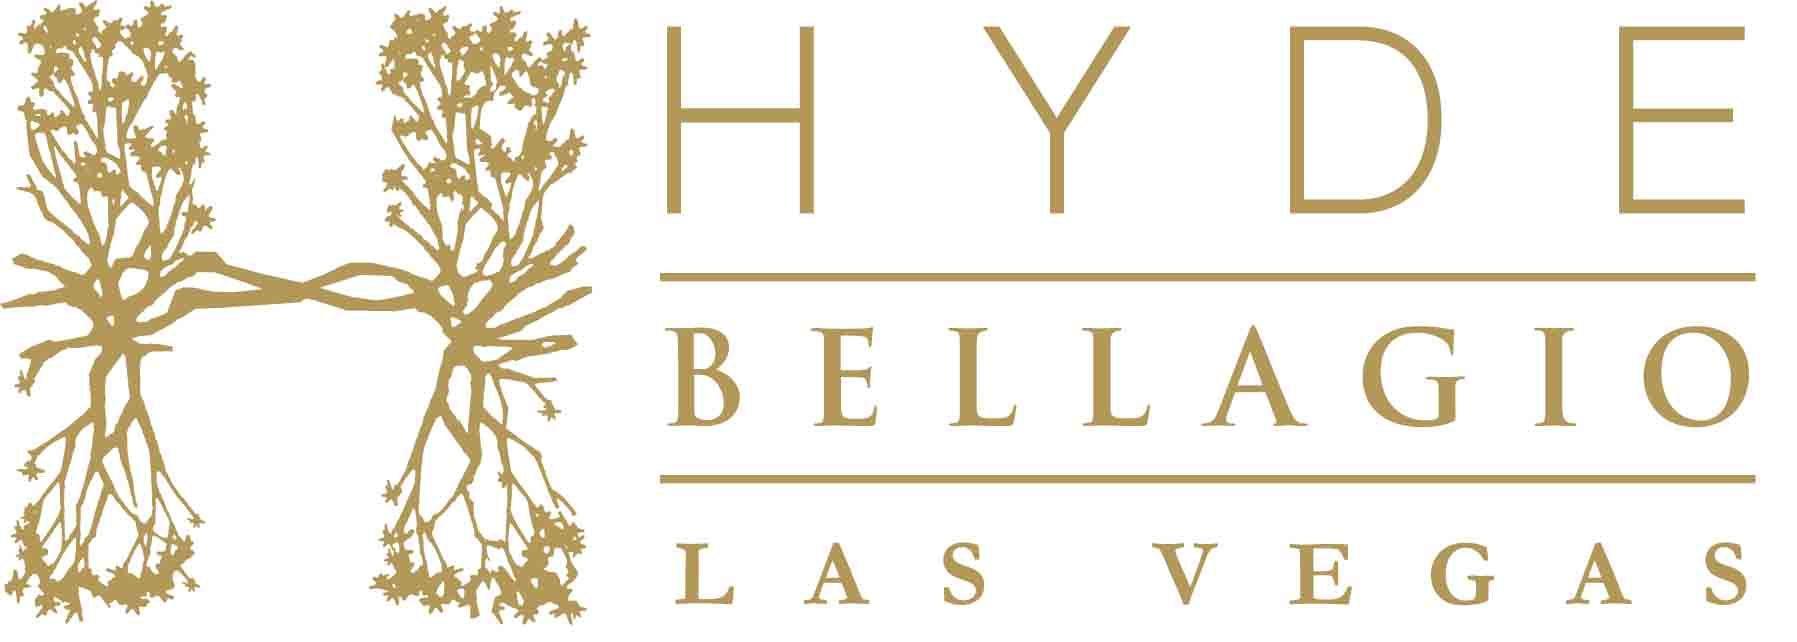 Bellagio Logo - Hyde Bellagio Logo. Vegas Legal Magazine